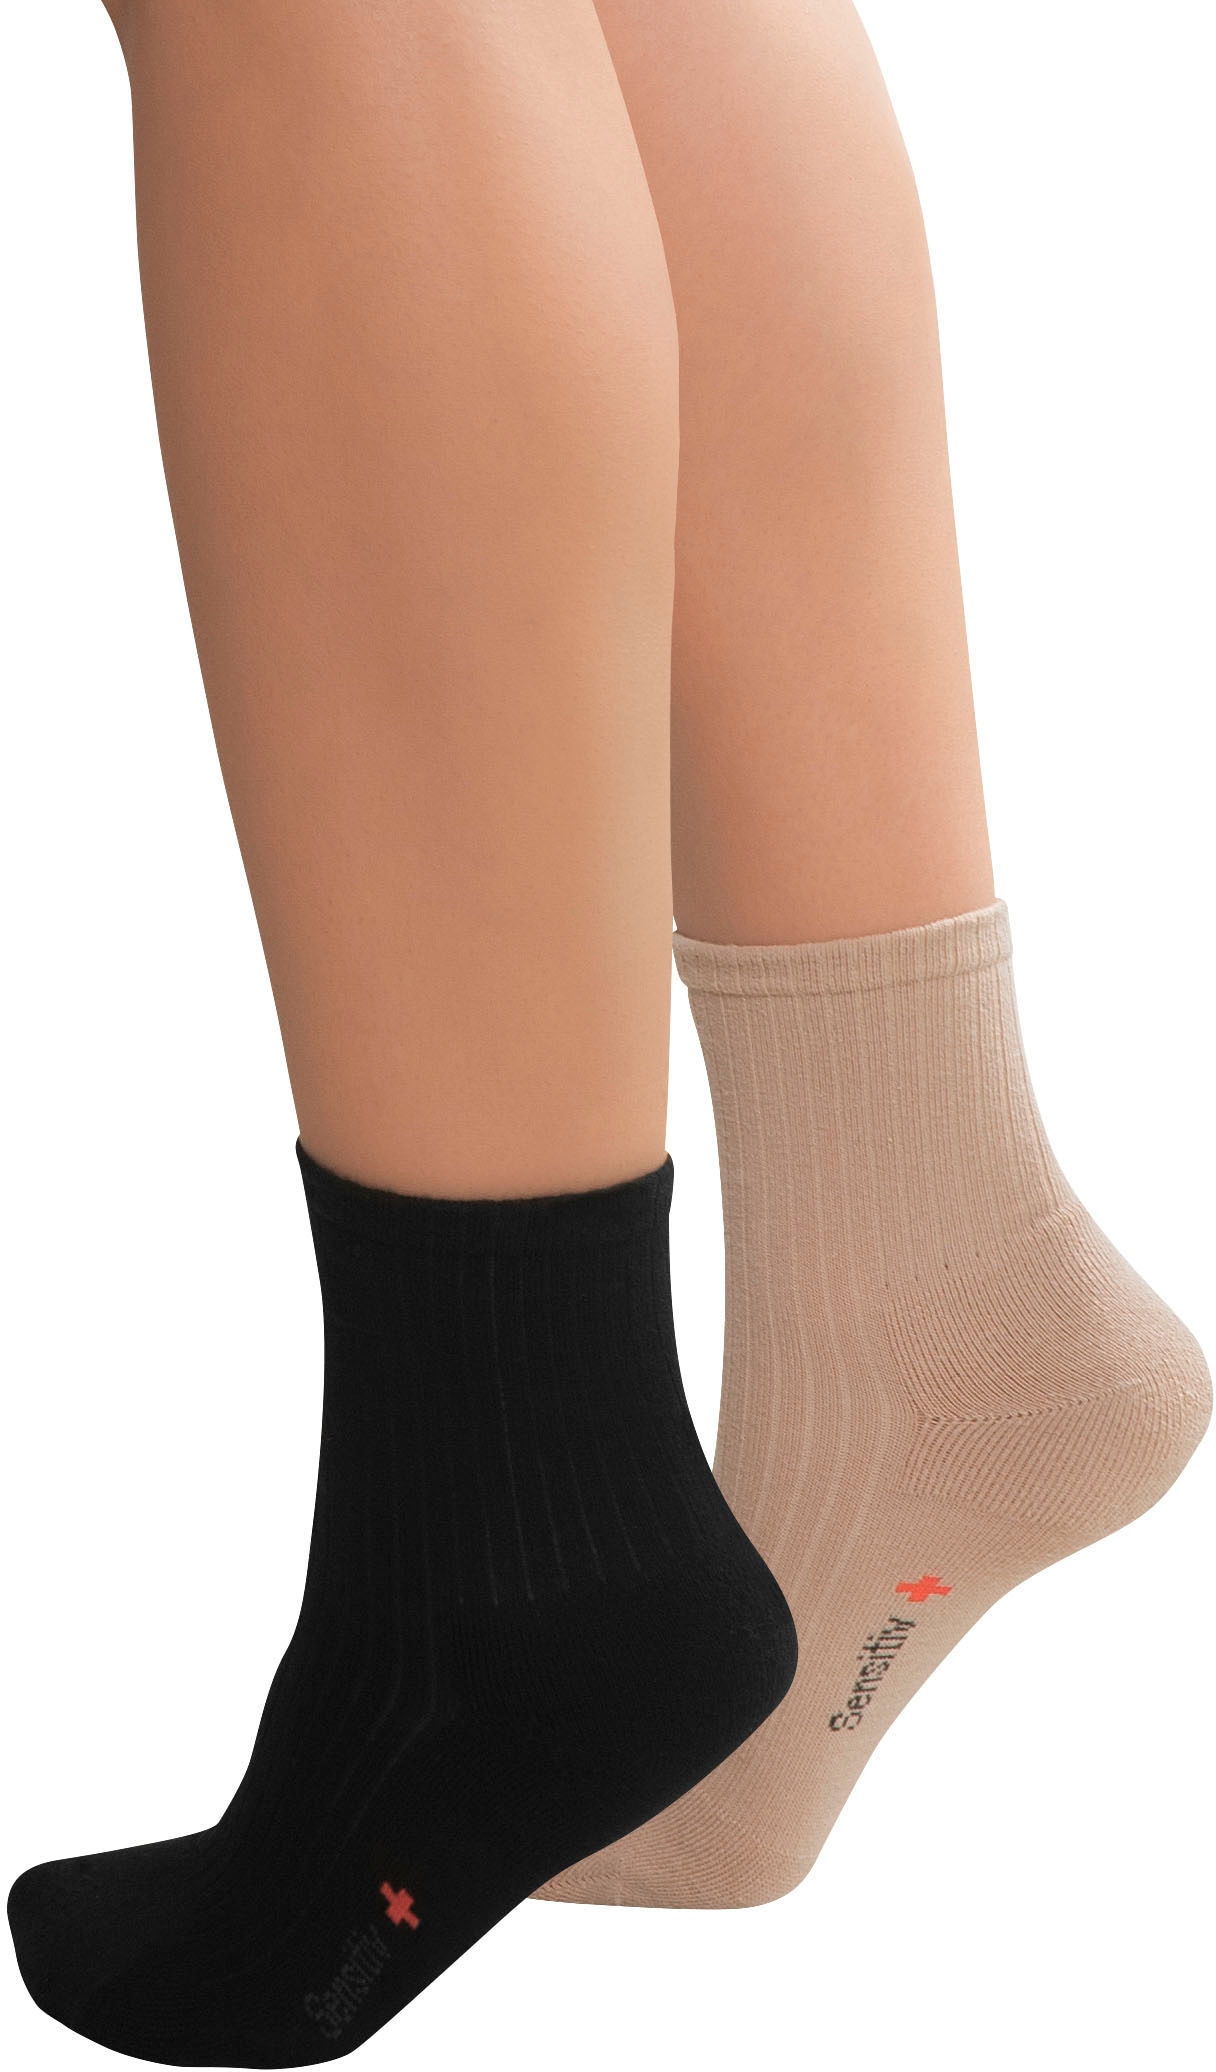 Shop im für Füße »Sensitiv Diabetikersocken empfindliche Socken«, Paar), Online OTTO Fußgut (2